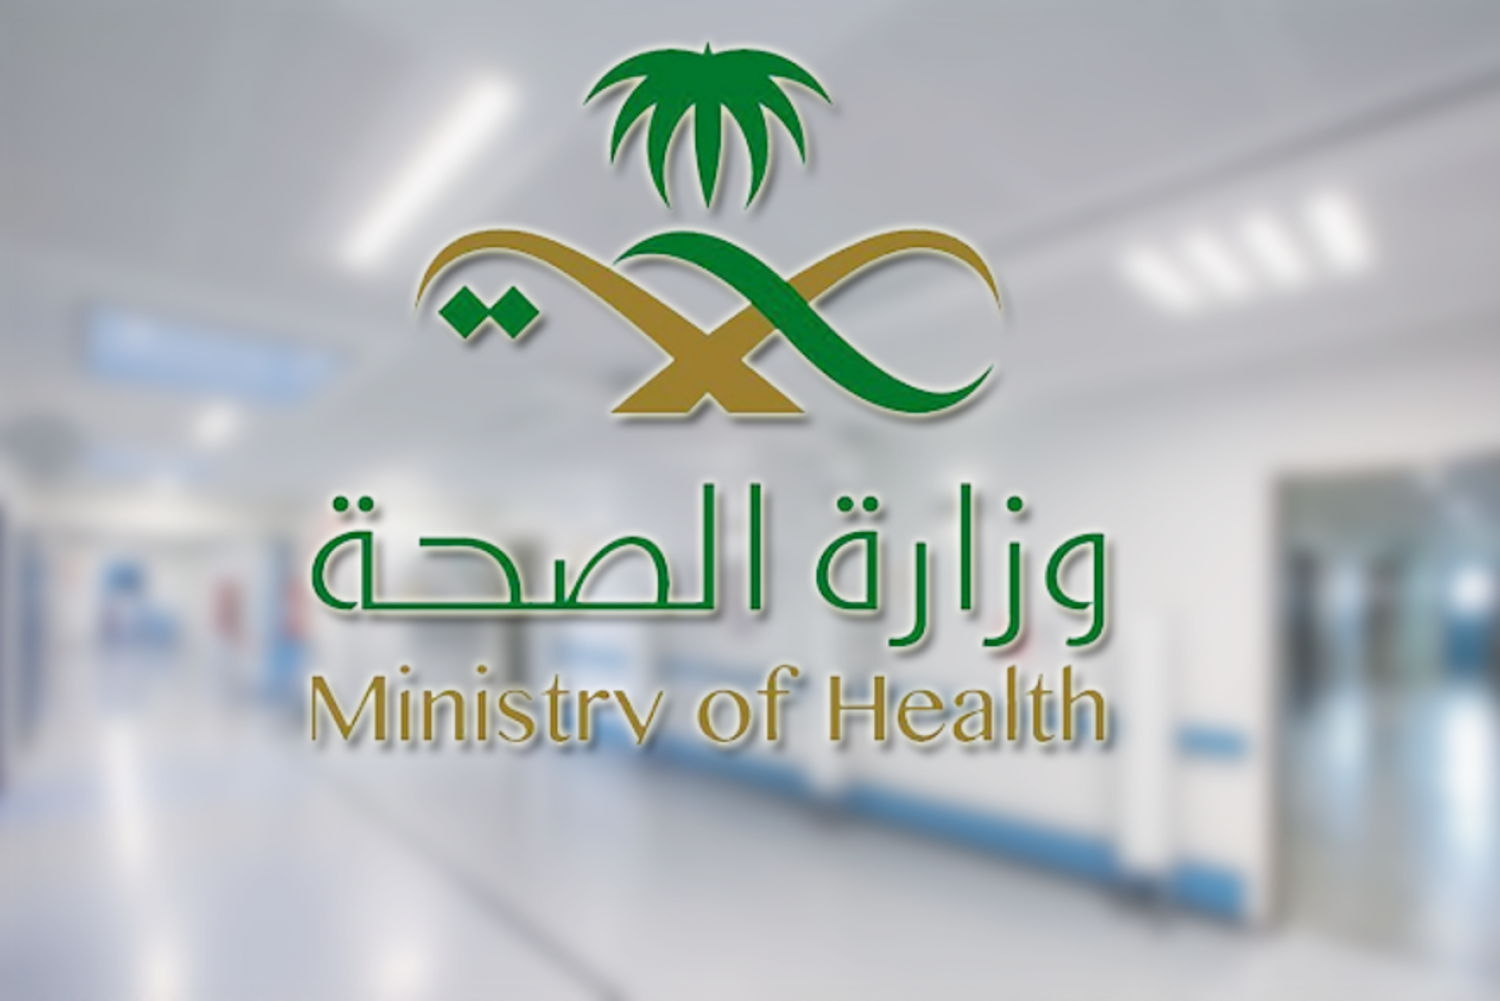 Saudi Ministry of Health logo 7 - شعار وزارة الصحة السعودية png مفرغ بدون خلفية شفاف للتصميم